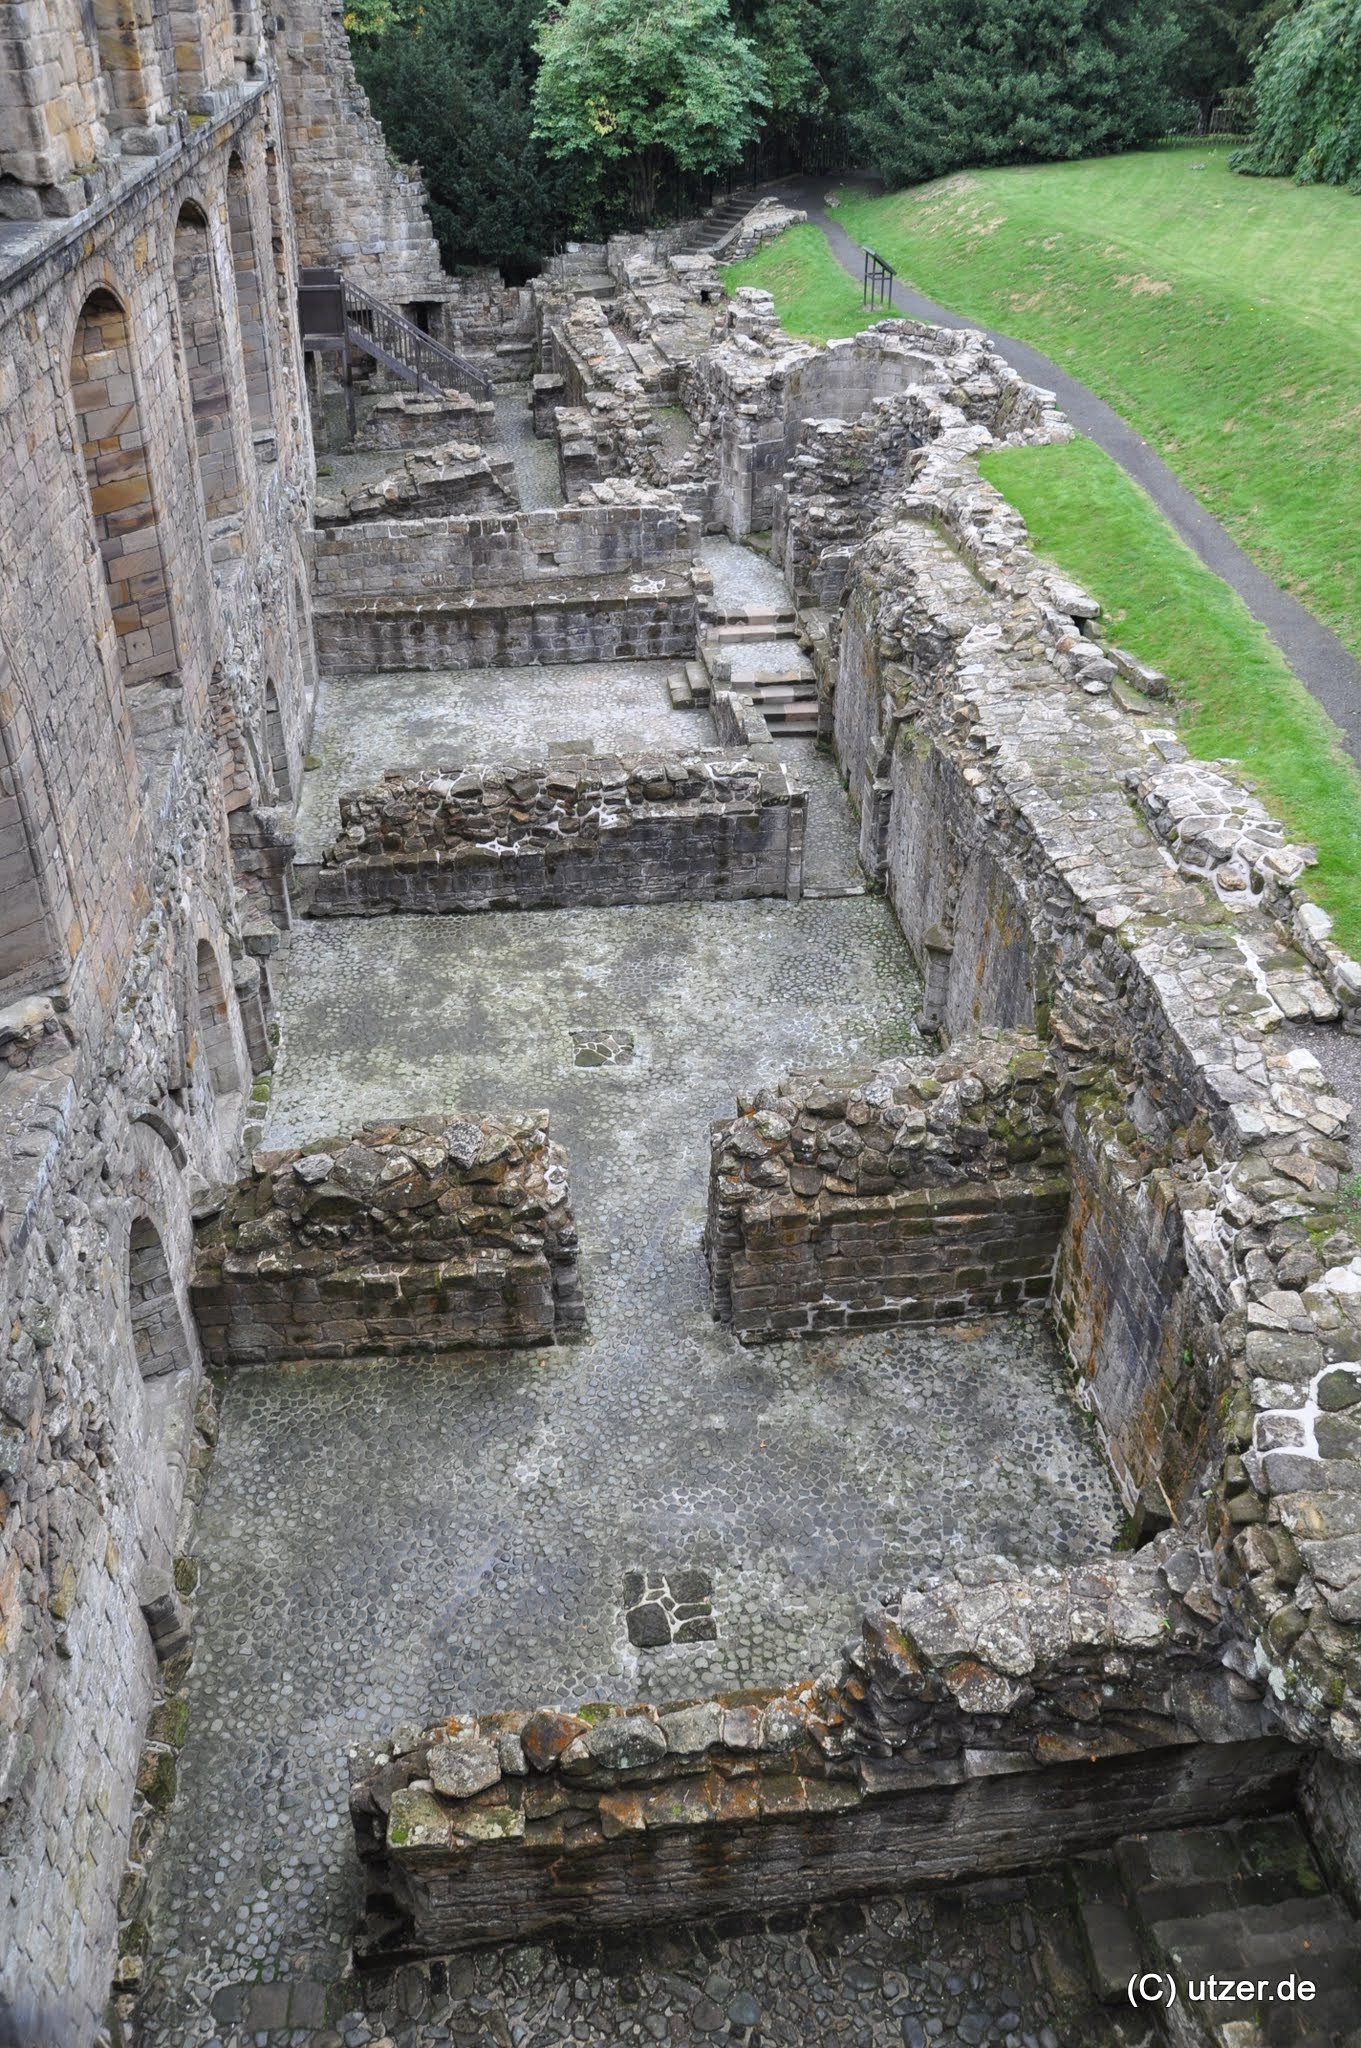 Dunfermline Abbey, dies ist das Hauptwohngebäude und der Blick fällt auf den Grundriss des untersten Stockwerkes, also den Keller. https://en.wikipedia.org/wiki/Dunfermline_Abbey